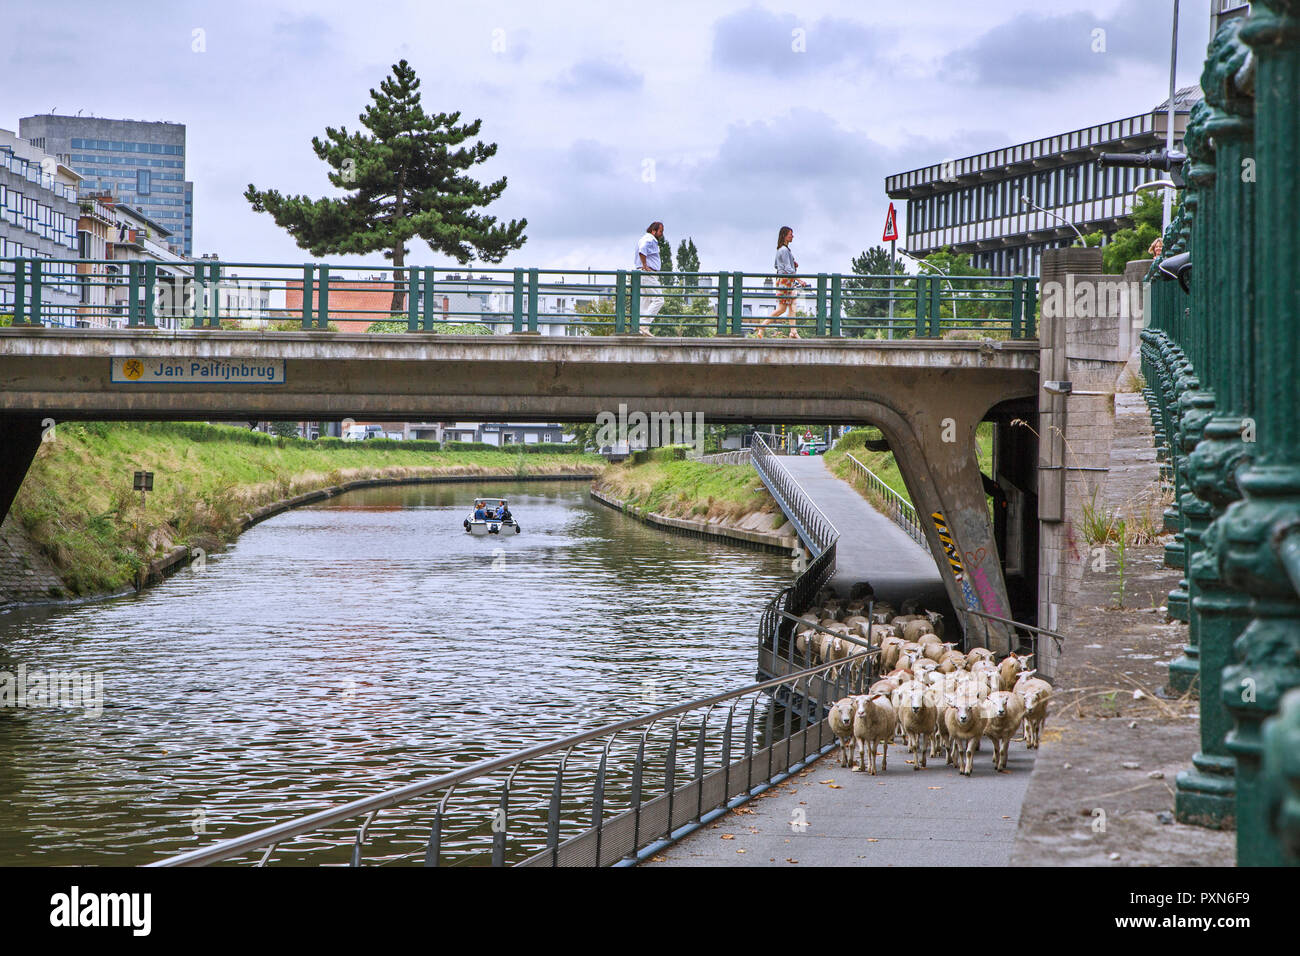 Pastor pastoreando ovejas bajo el puente a lo largo de empinadas orillas de canales en el verano en la ciudad de Ghent / Gent, Flandes, Bélgica Foto de stock